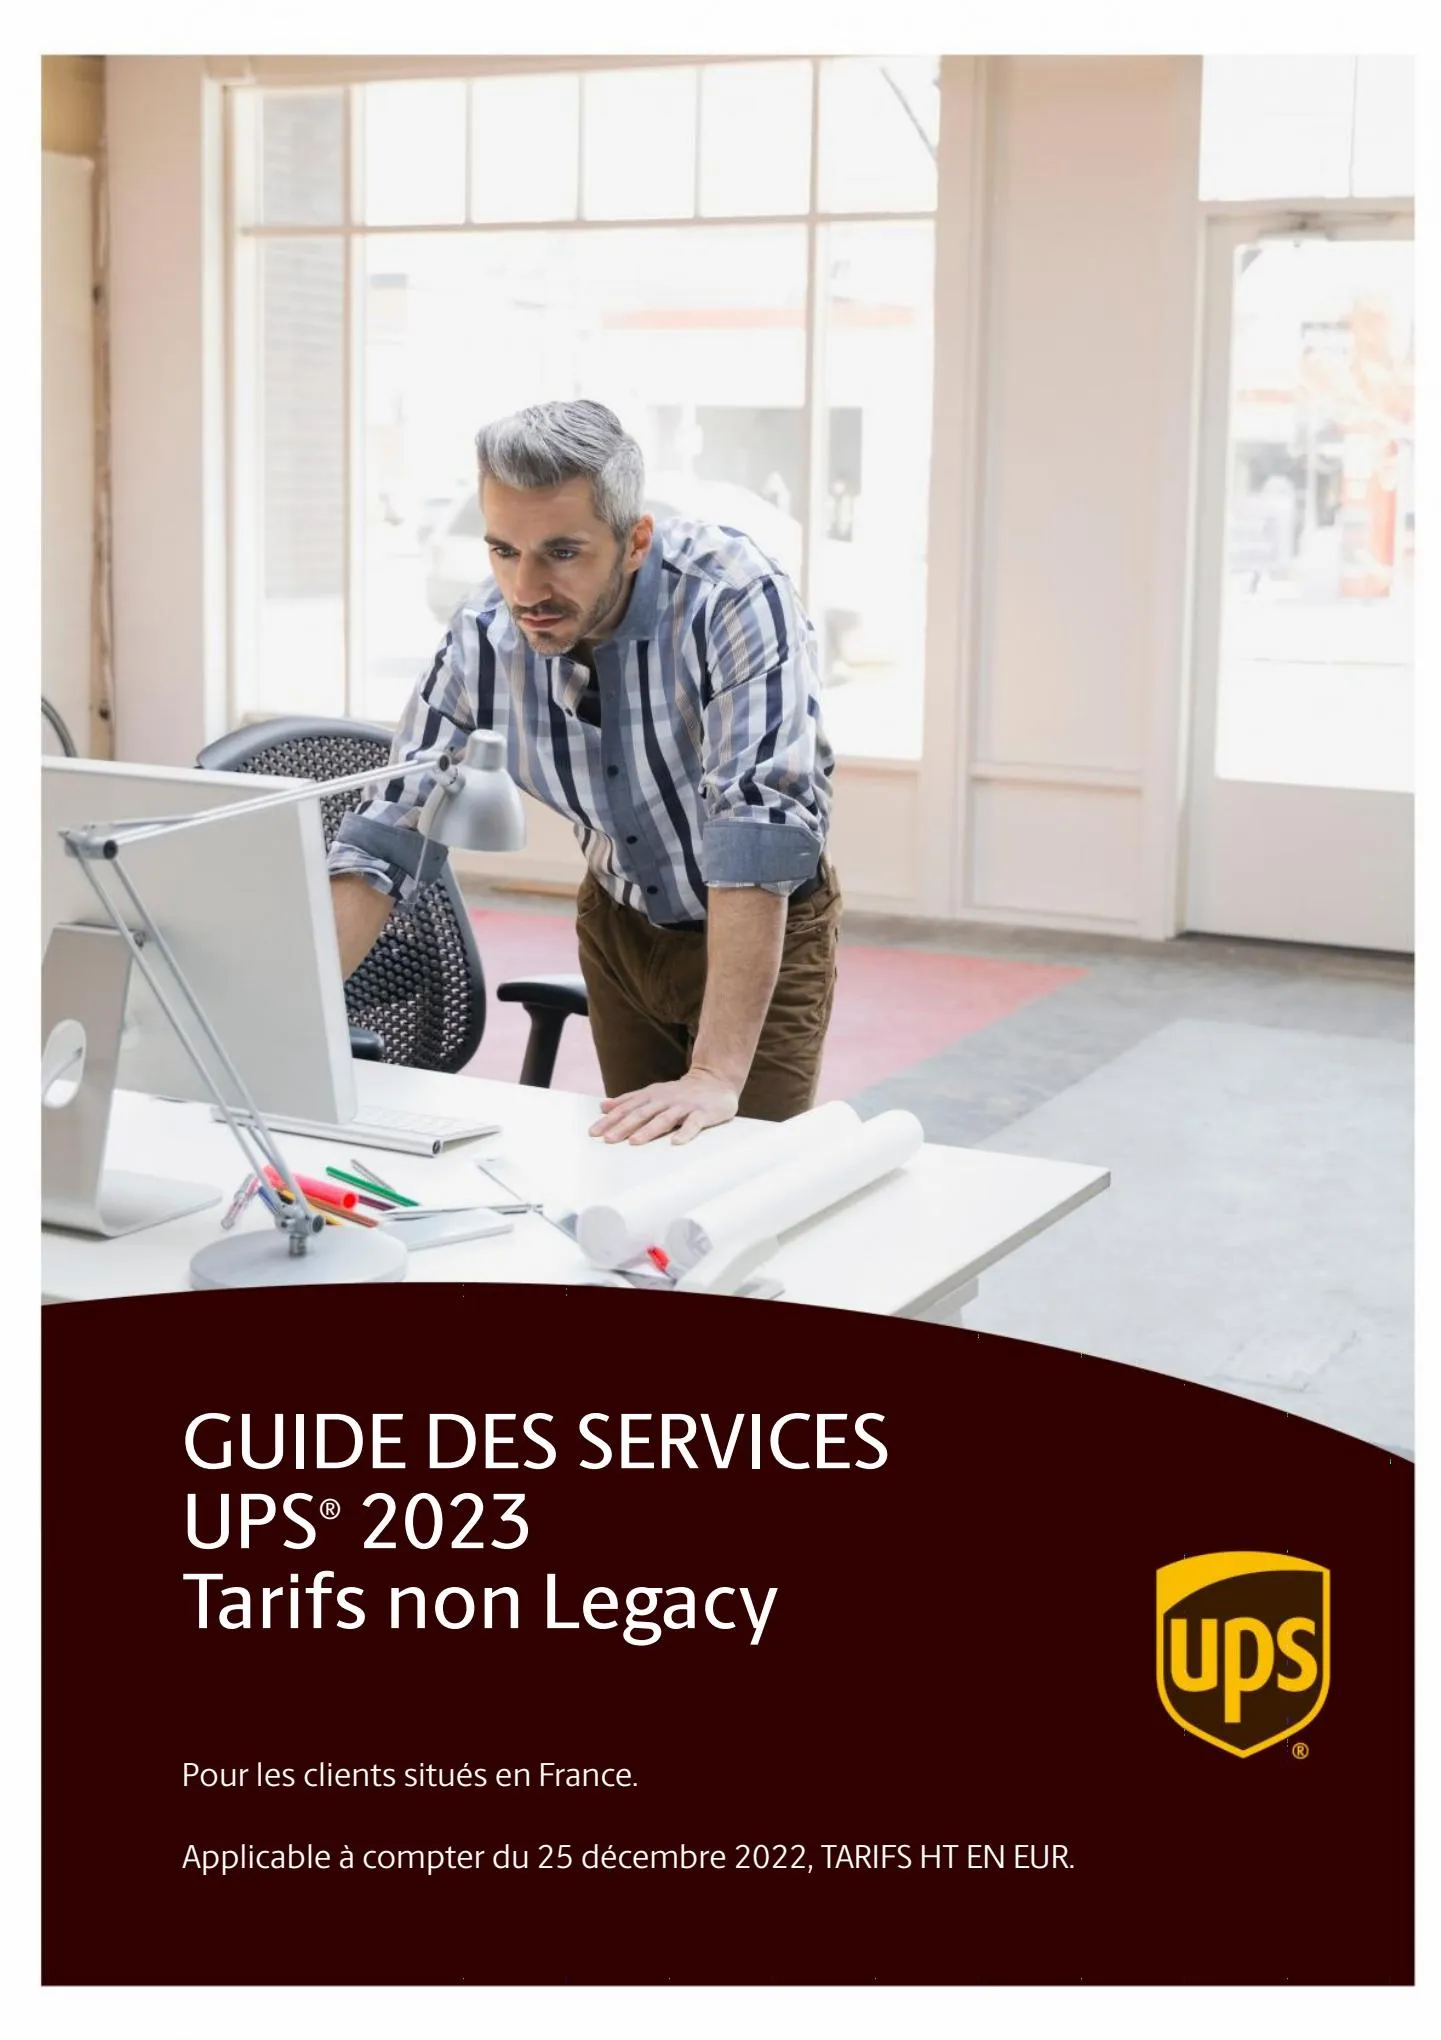 Catalogue Guide des Services 2023, page 00001